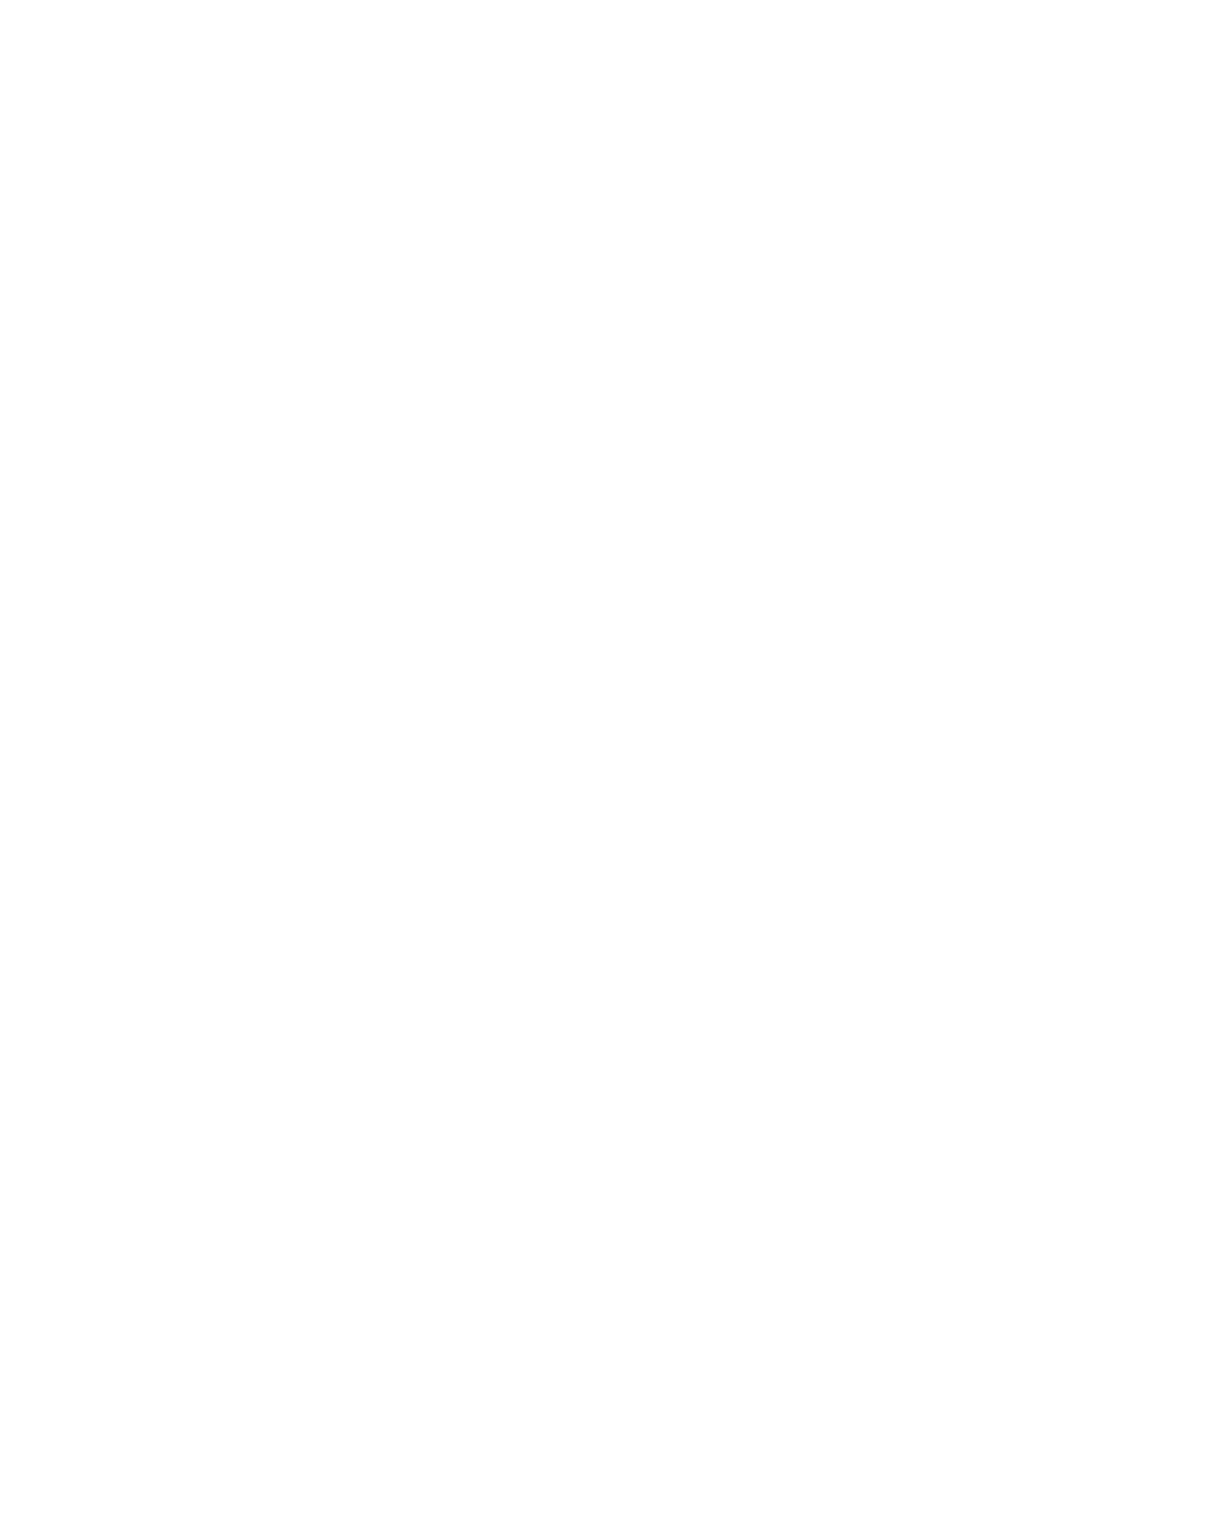 Donaldson logo for dark backgrounds (transparent PNG)